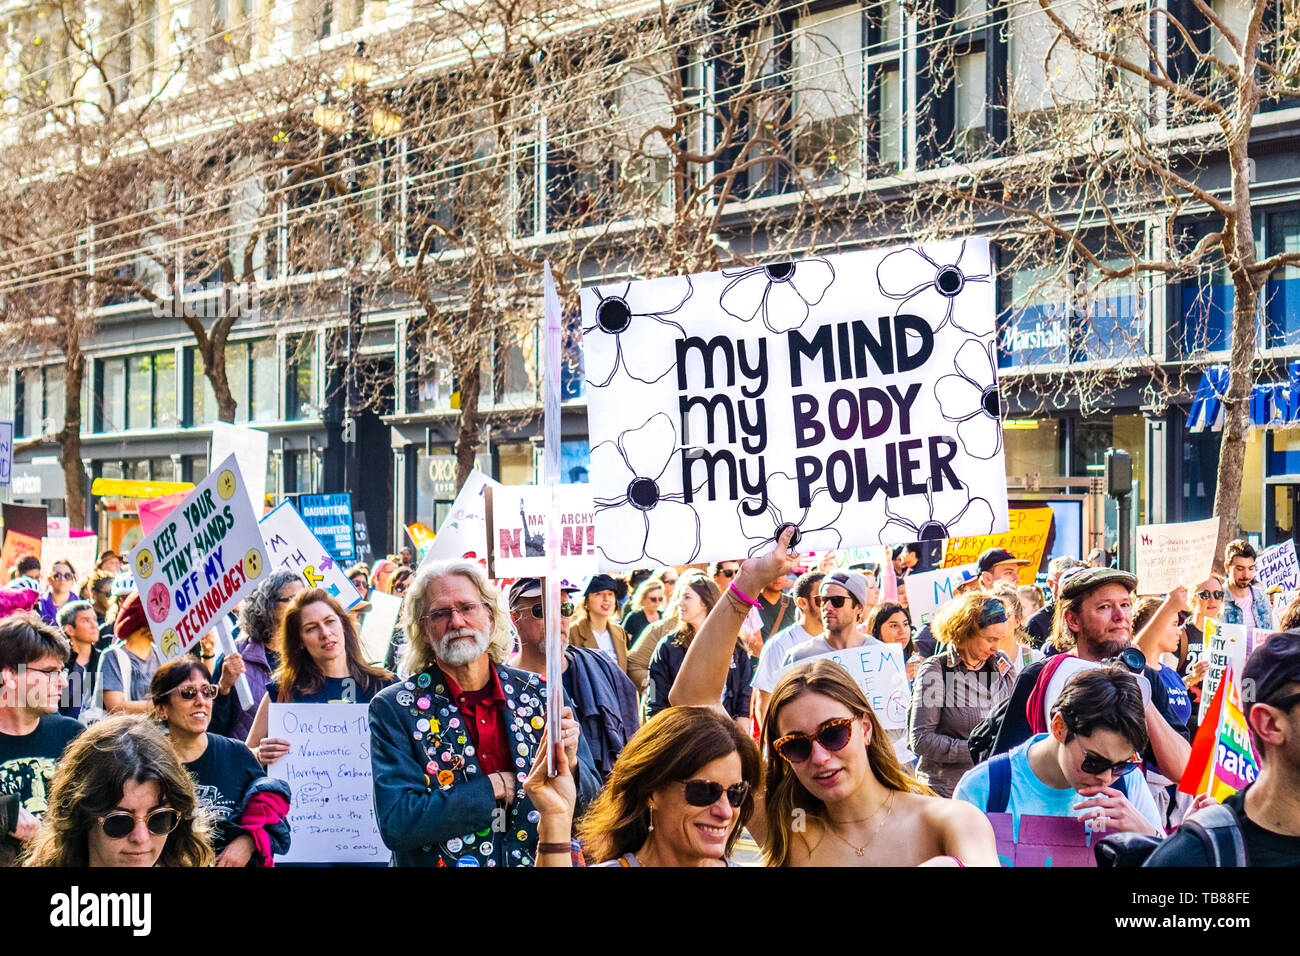 El 19 de enero de 2019 San Francisco / CA / USA - Participante en el evento de Marzo la mujer tiene "mi cuerpo, mi elección, mi energía' firmar mientras marchaban hacia el mercado Foto de stock